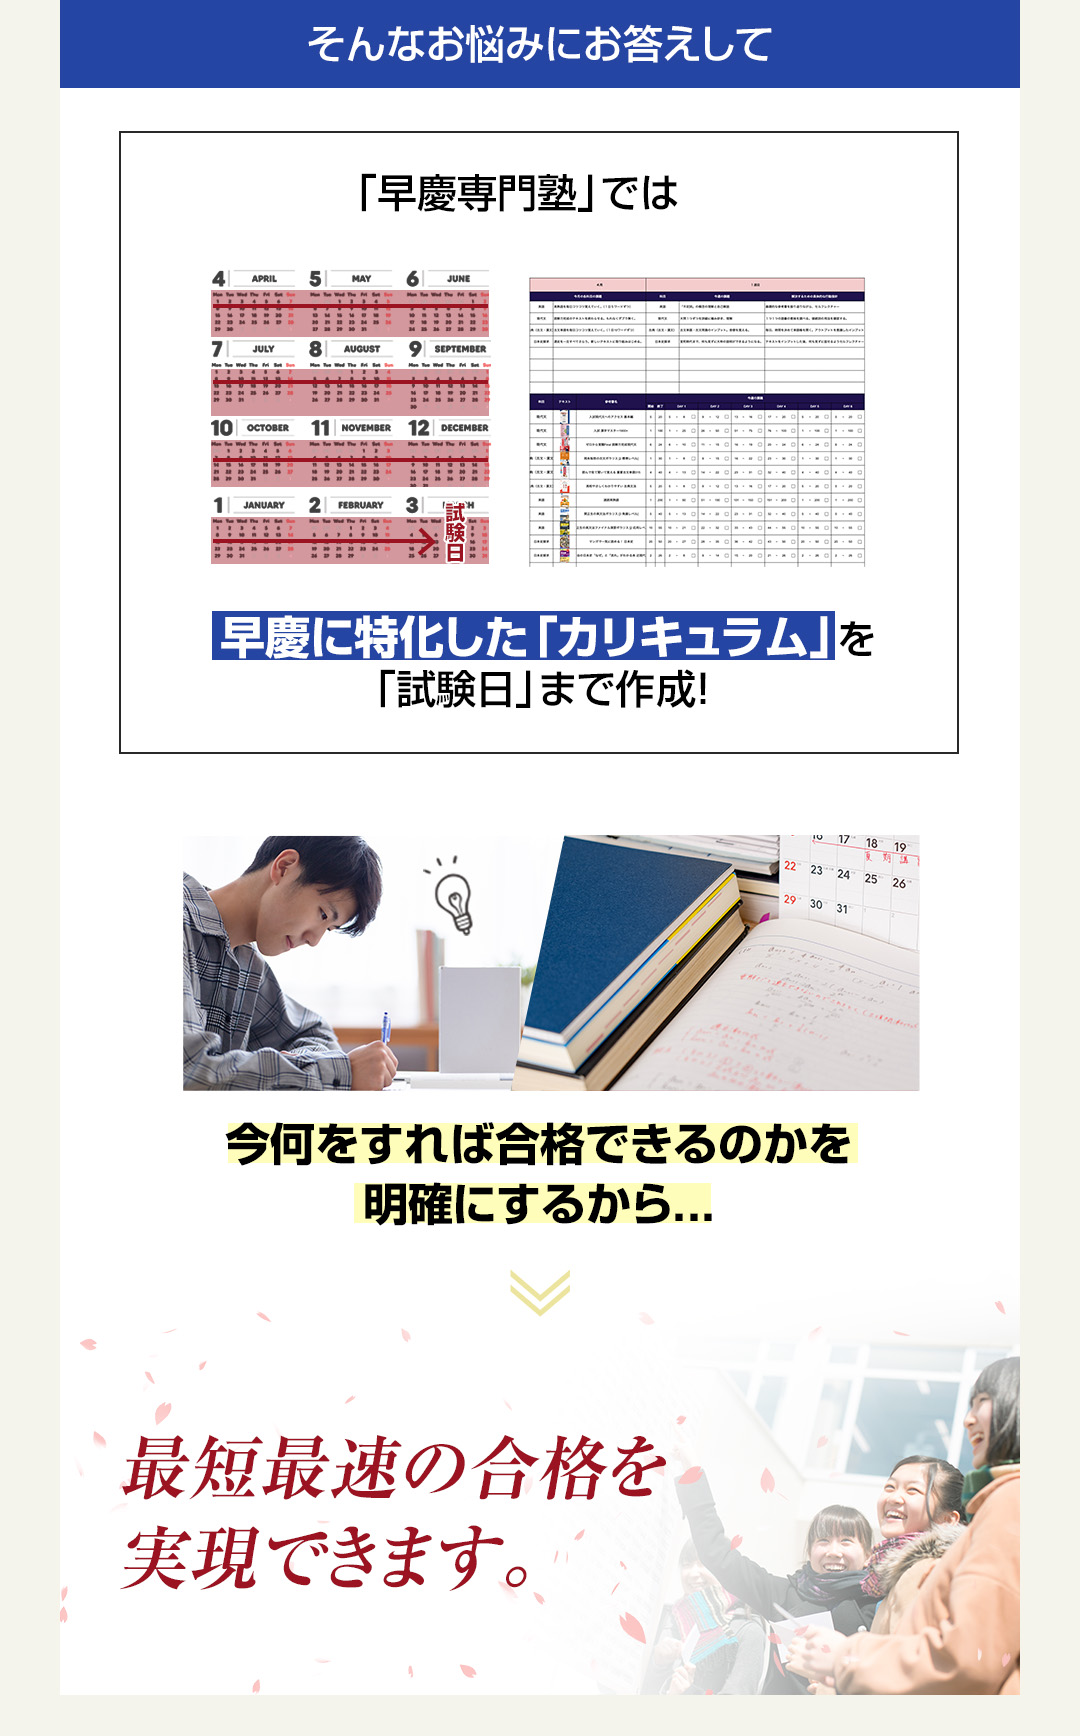 「早慶専門塾」では早慶に特化した「カリキュラム」を「試験日」まで作成